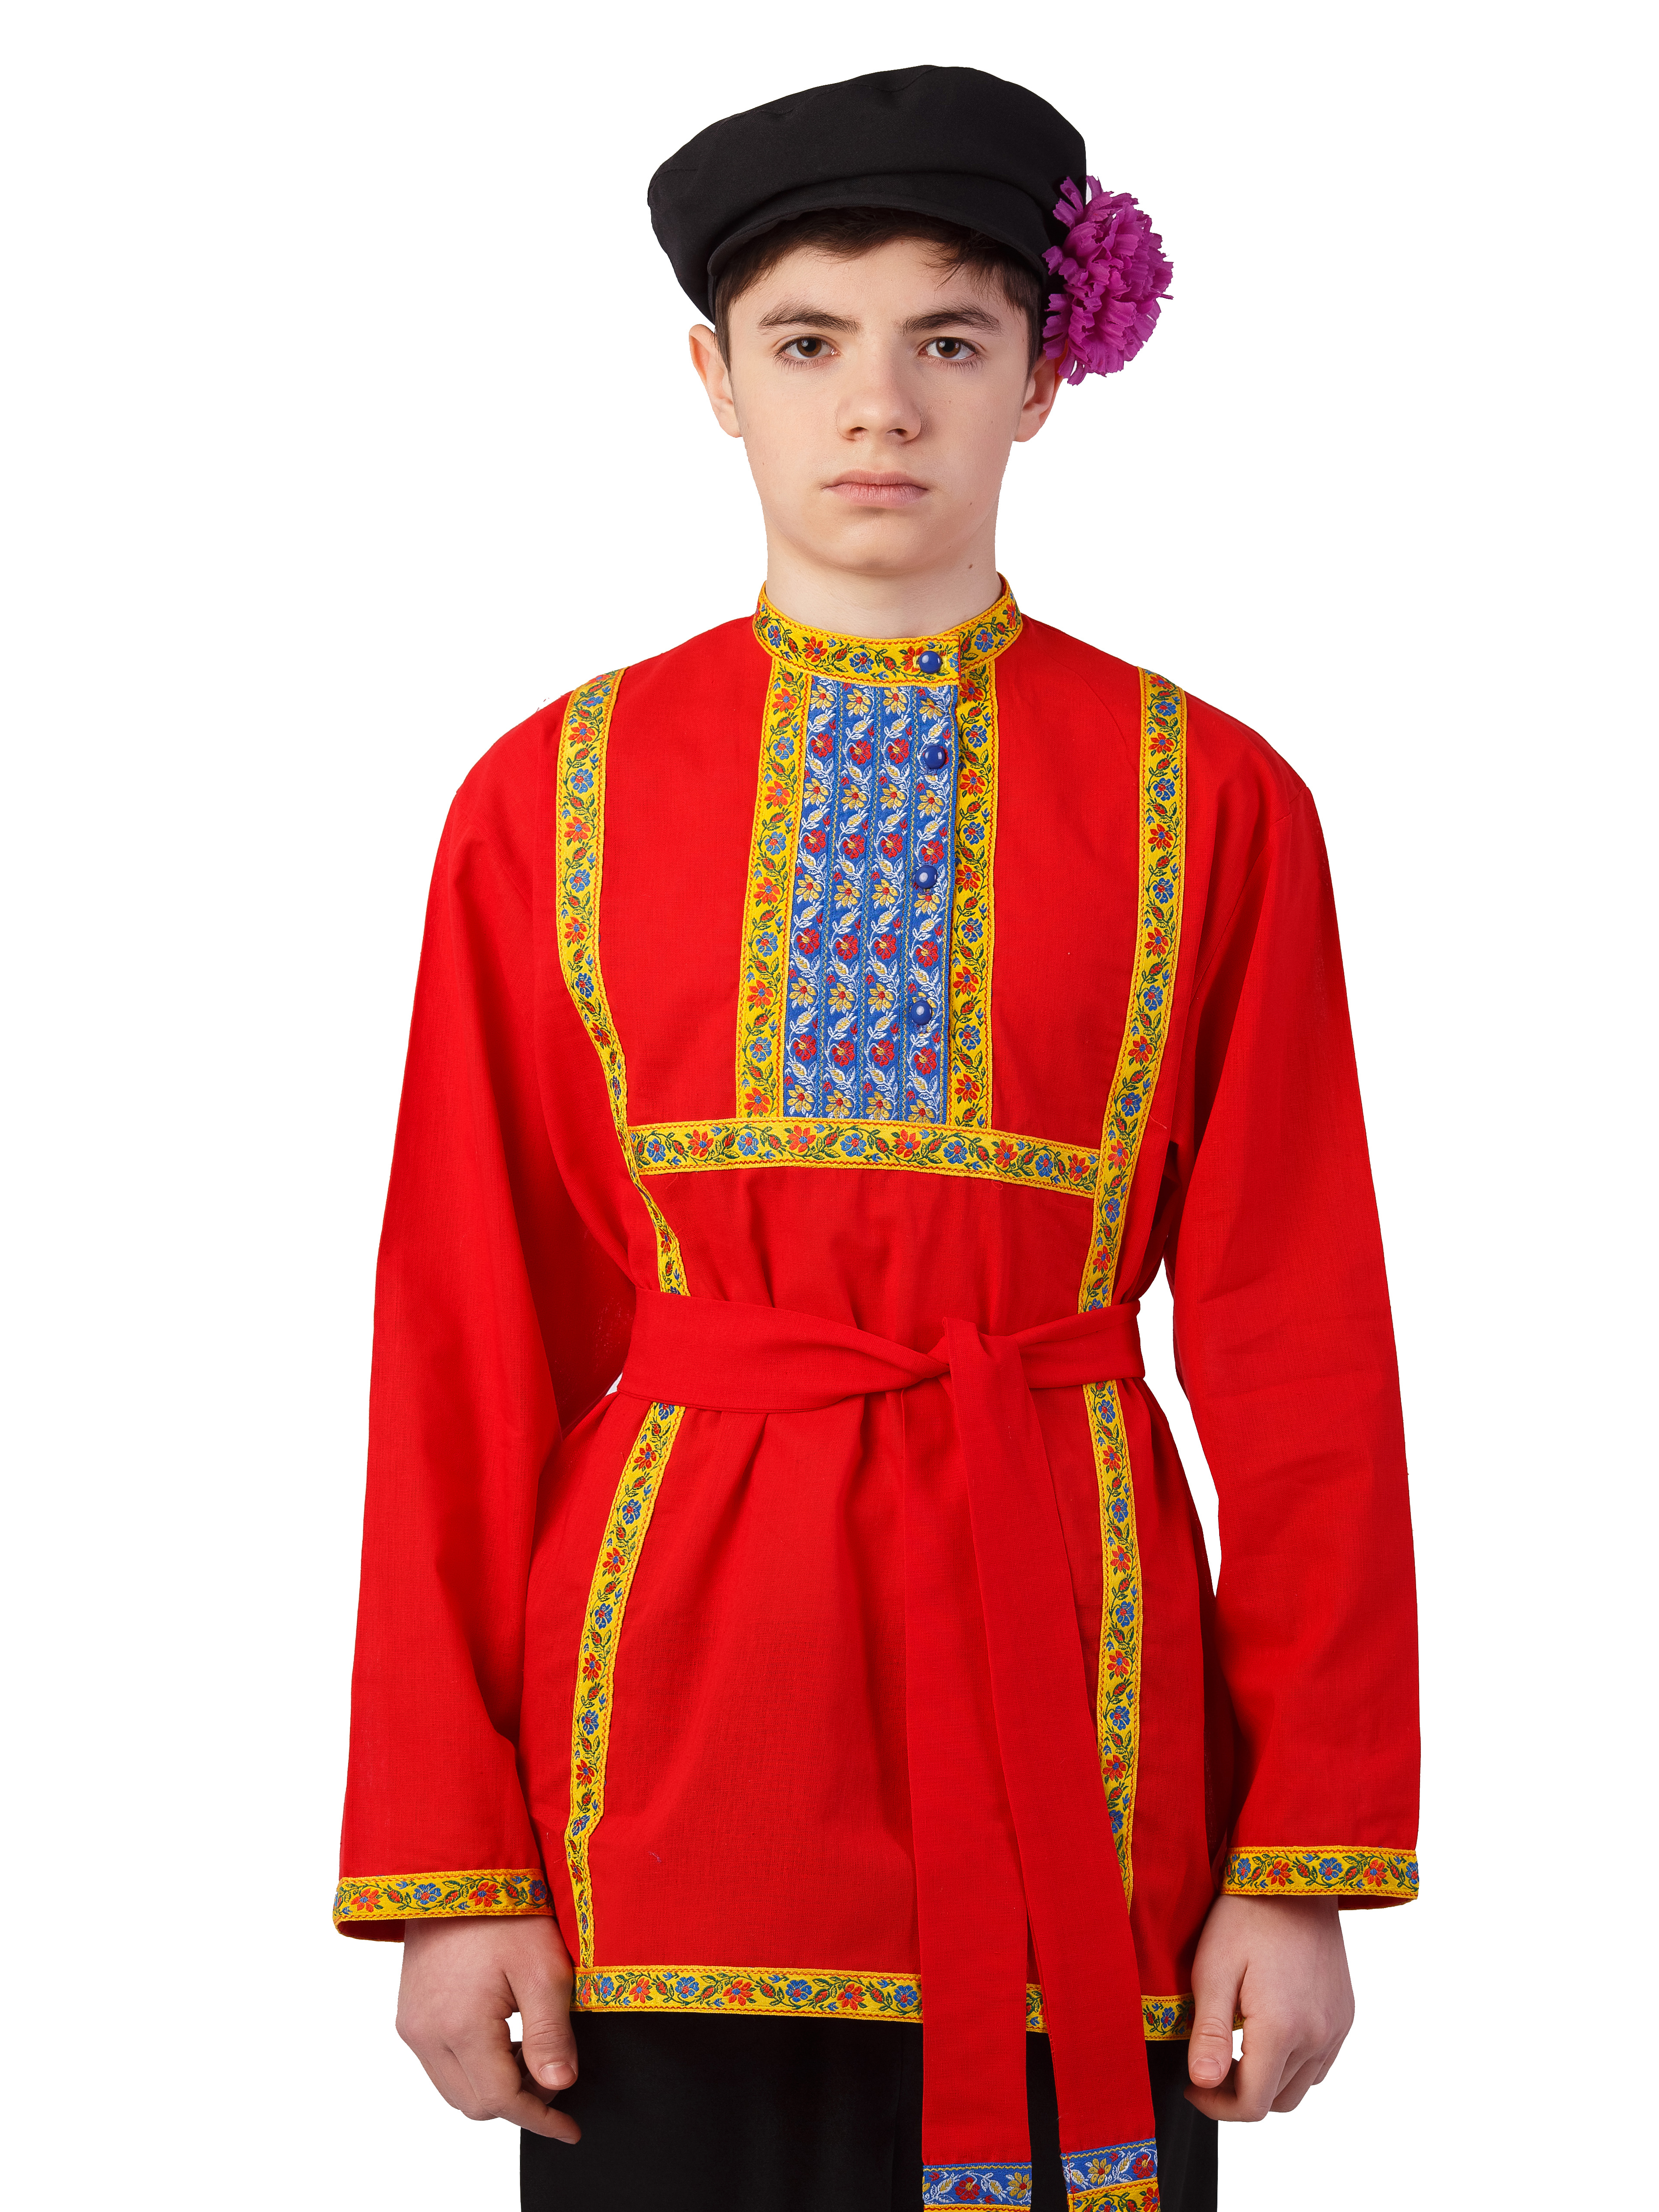 Мужской народный костюм